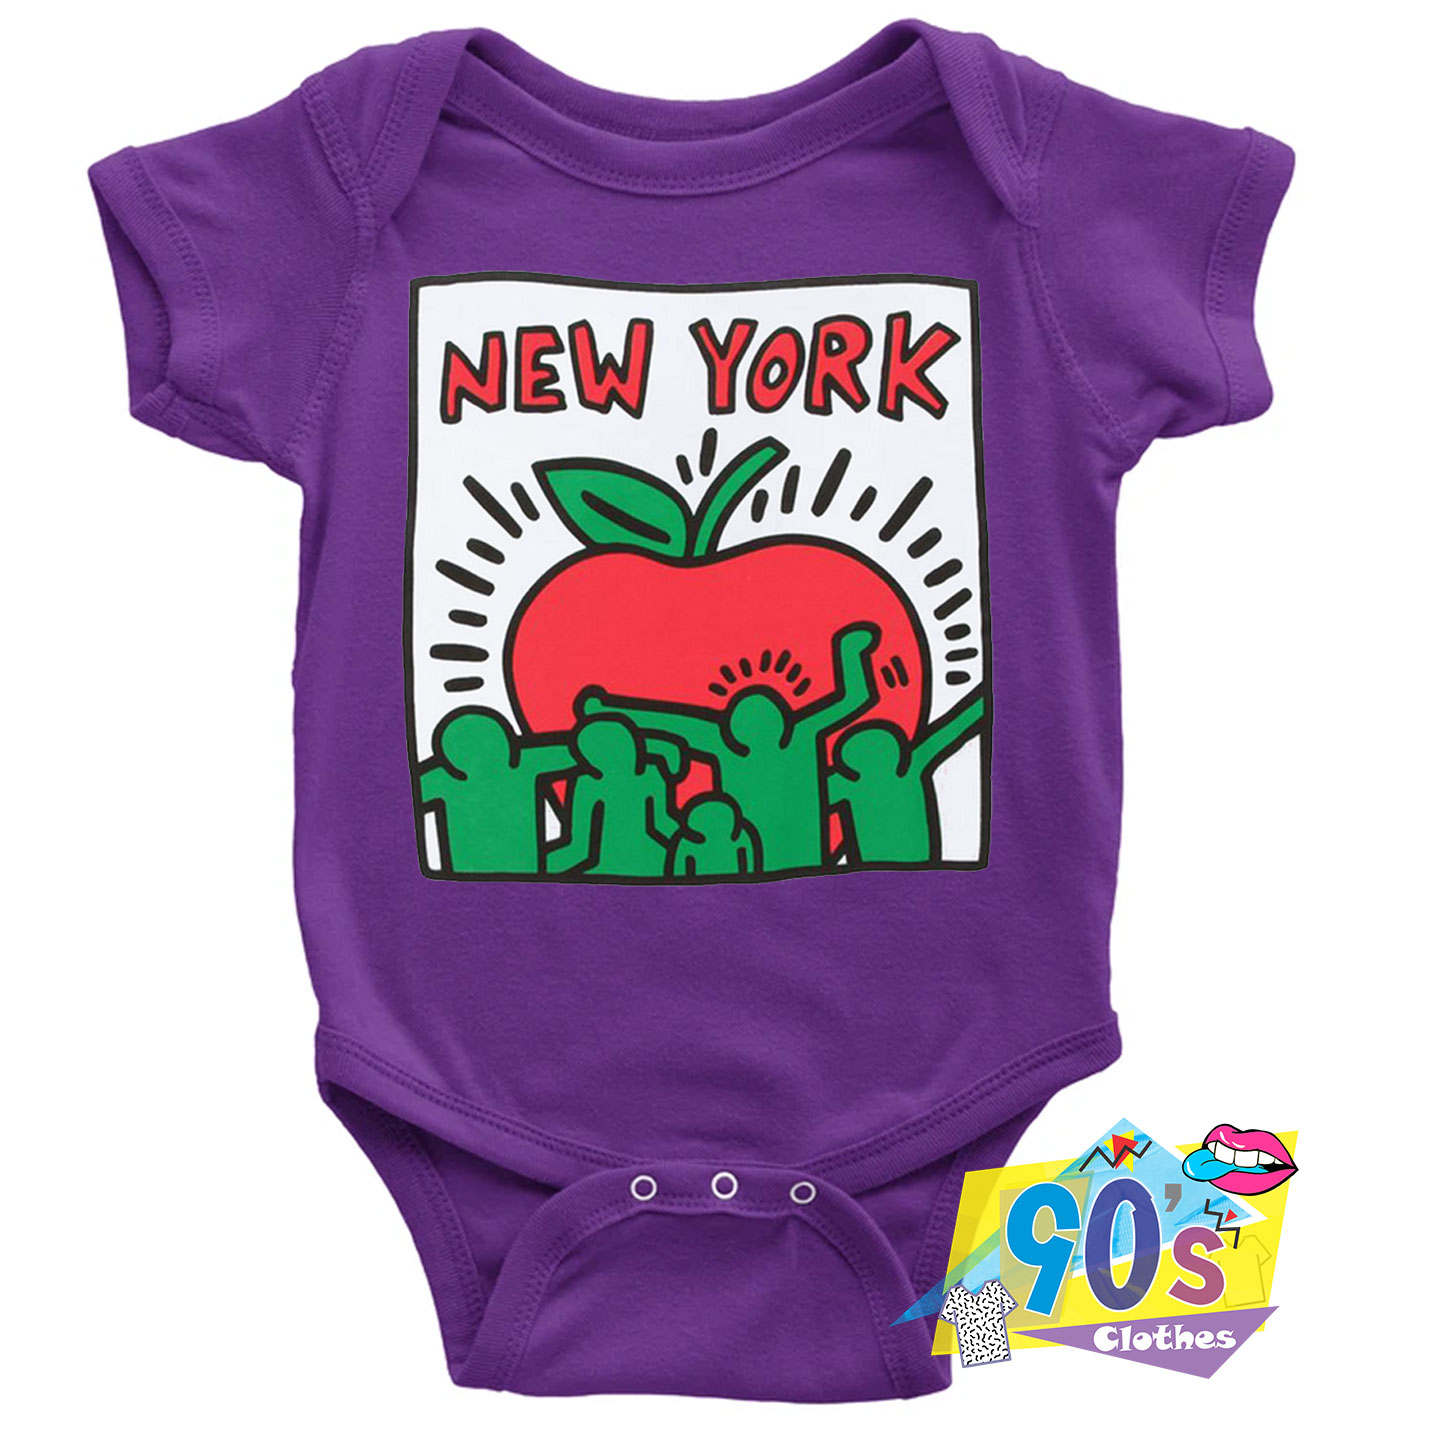 Unisex Baby Onesie Footie Sleepsuit Layette Keith Haring Pop 12-18 Months 100% Organic Cotton 